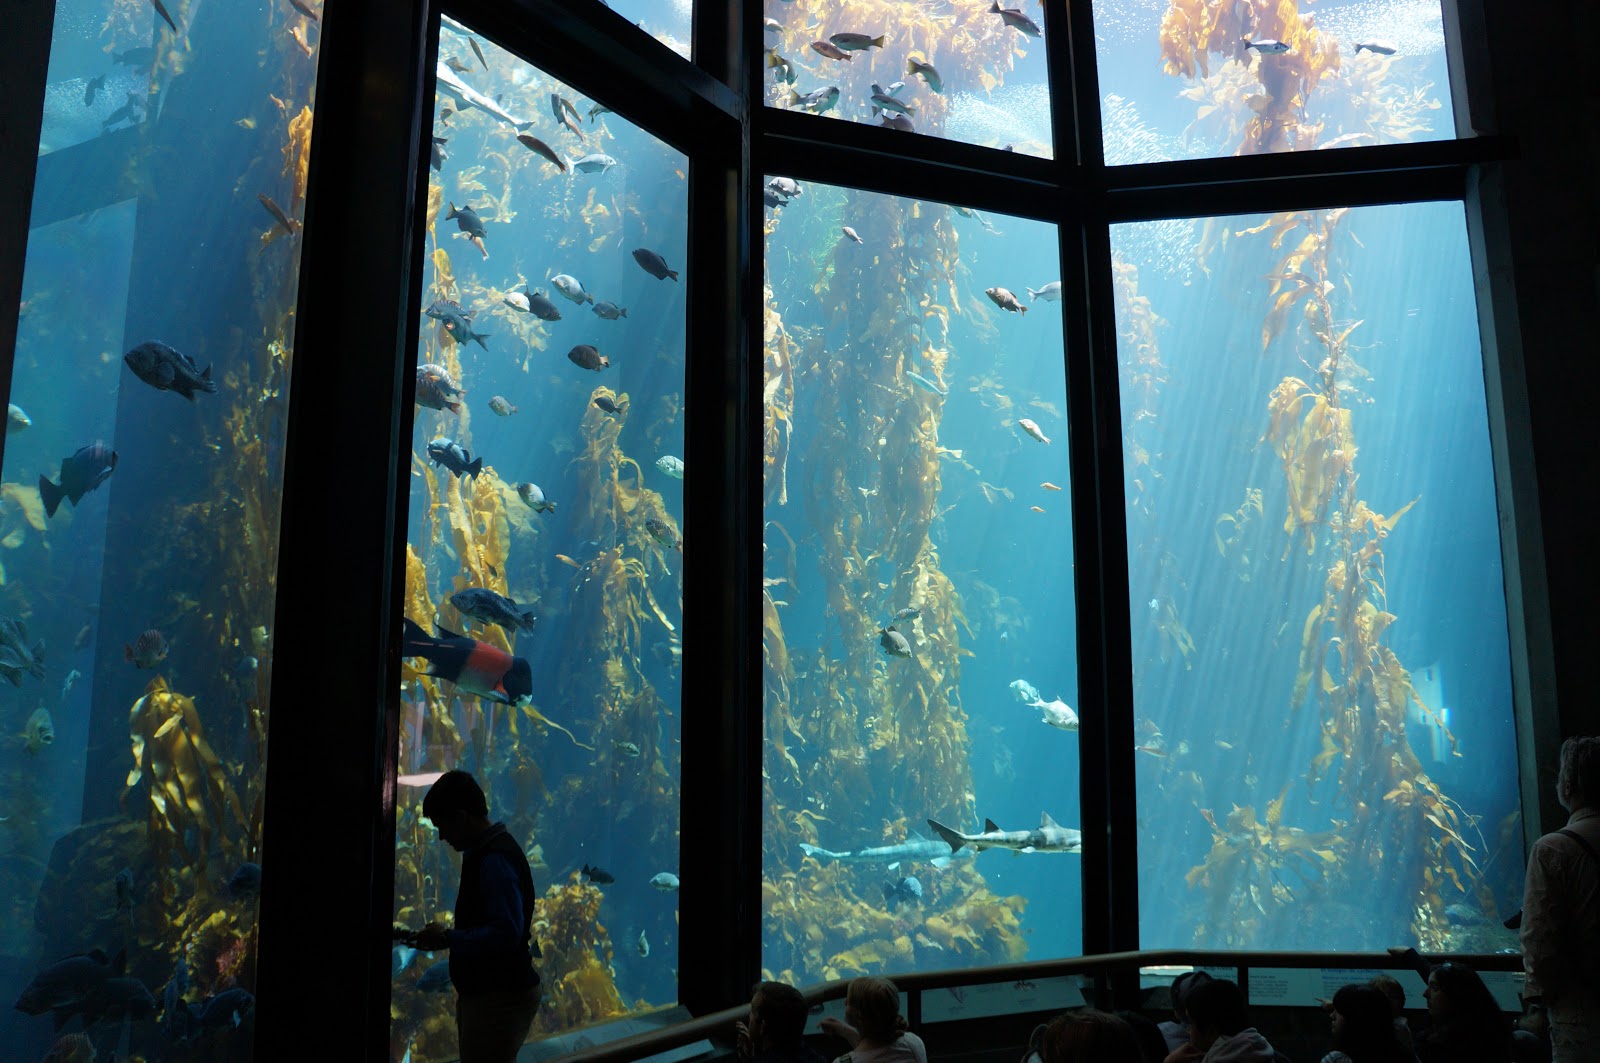 private tour monterey bay aquarium